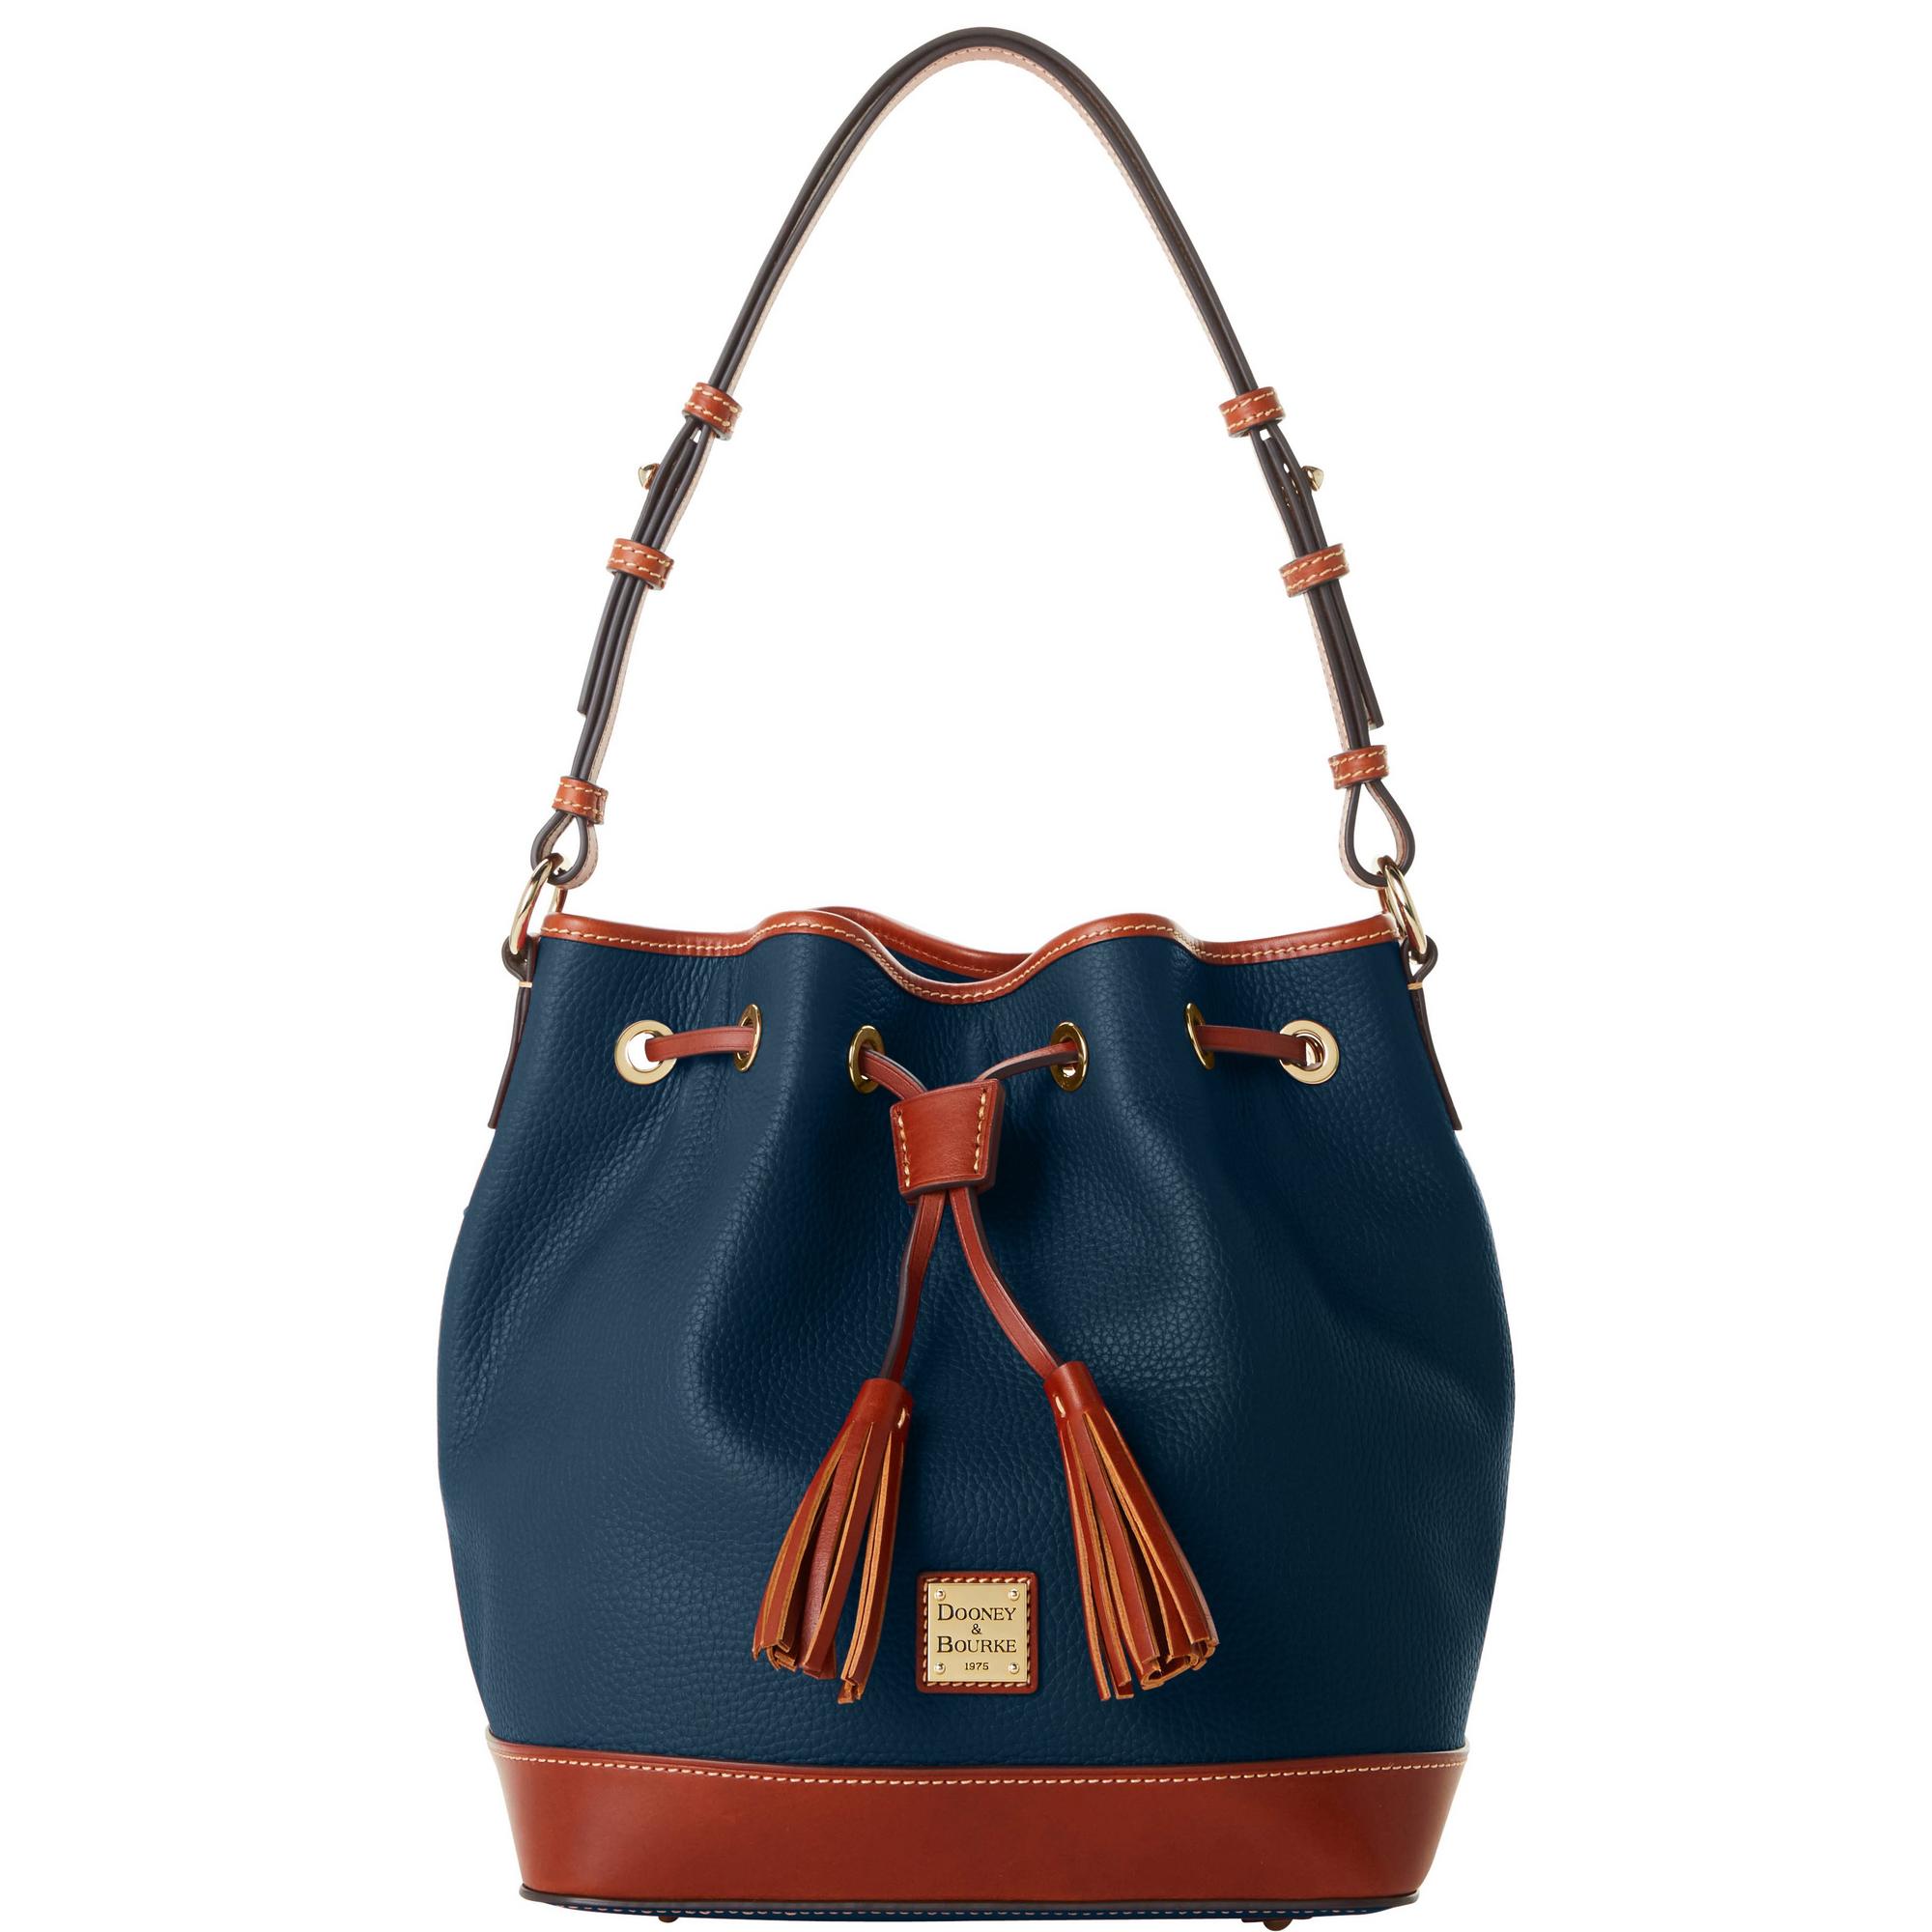 Dooney & Bourke Sale: Get Up to 50% Off Select Handbags | Hot ...